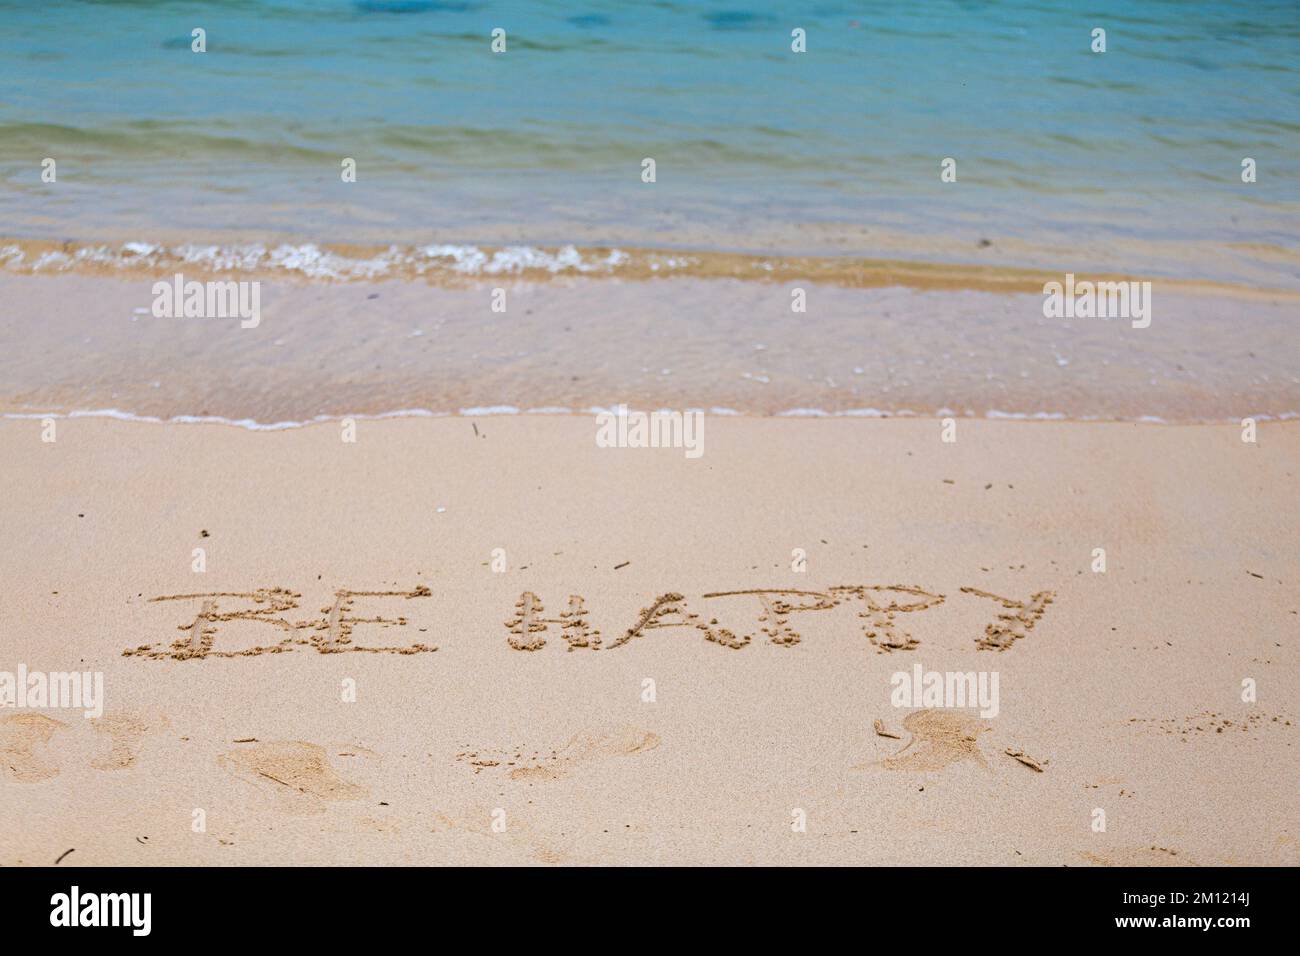 Soyez heureux - comme un message écrit avec un doigt dans le sable sur une plage avec des vagues et l'océan bleu à l'île Maurice, l'Afrique, vue de dessus, personne Banque D'Images